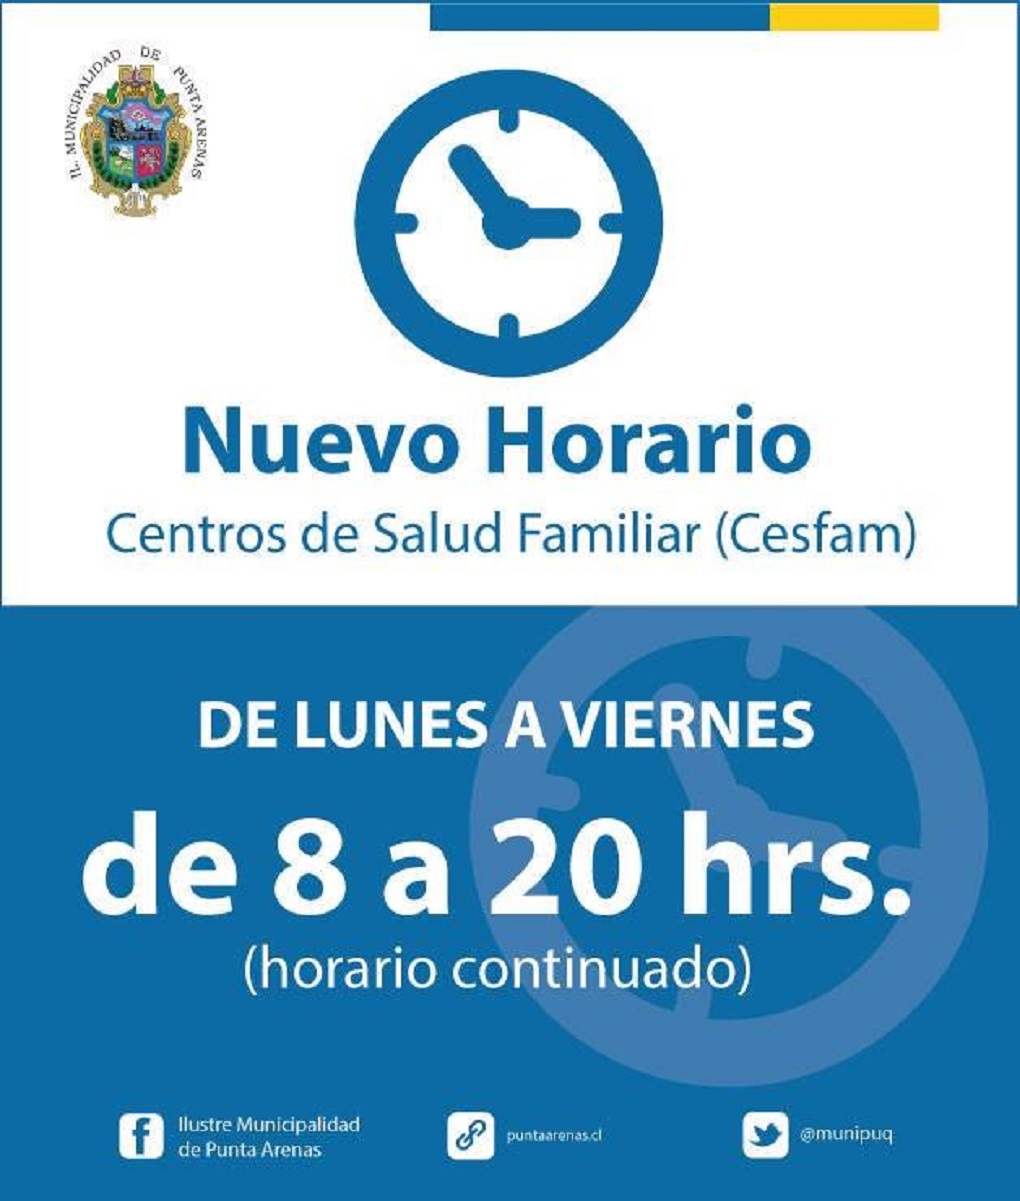 Se extienden horarios de funcionamiento de los CESFAM en Punta Arenas